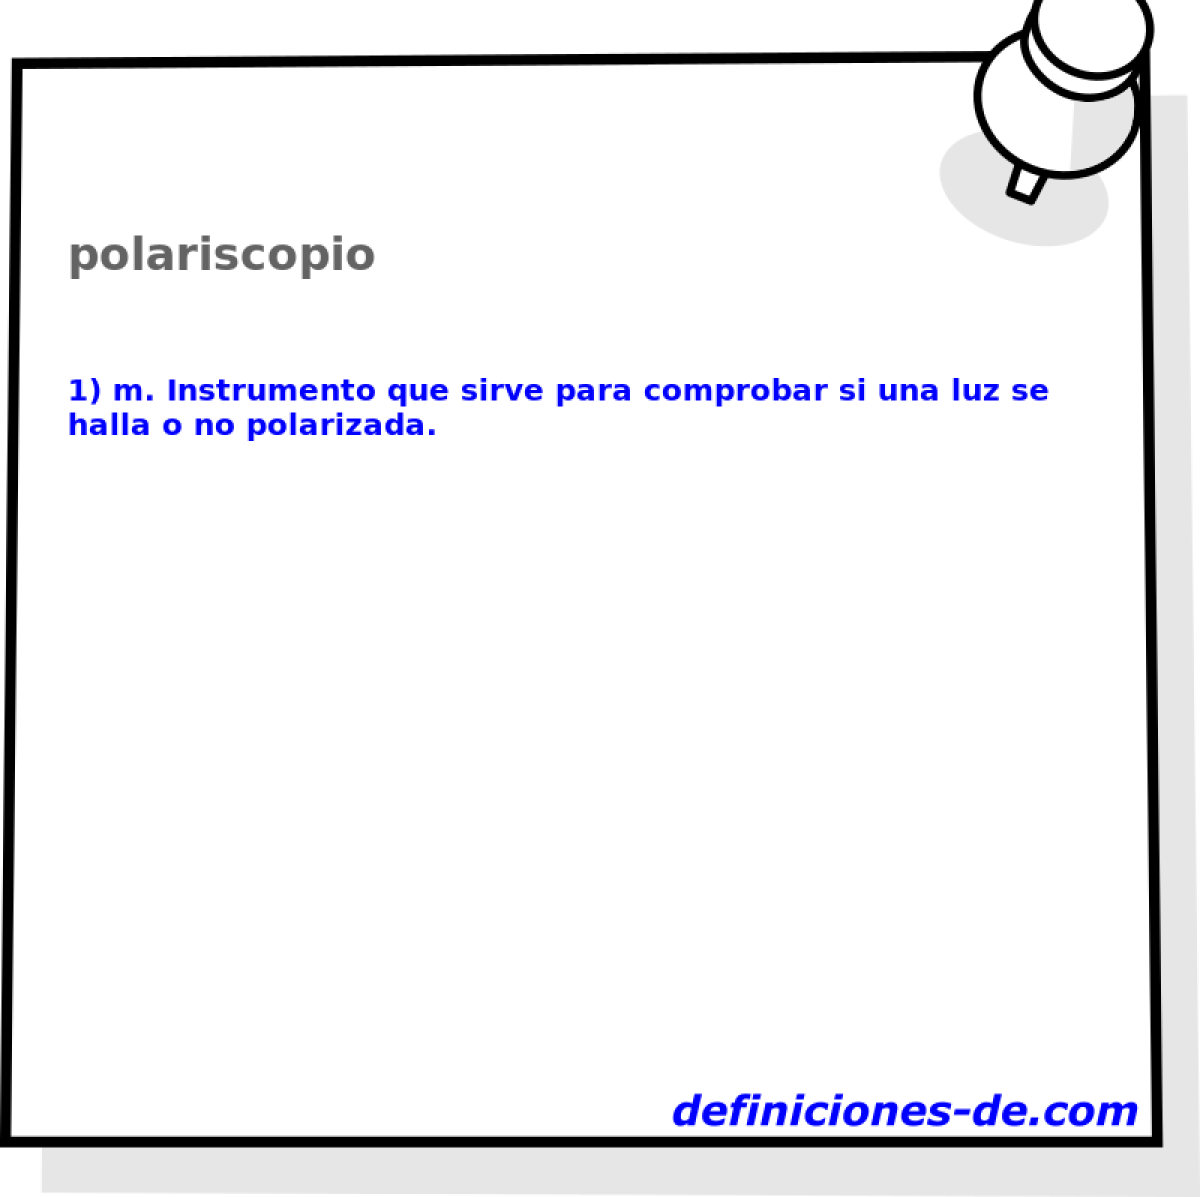 polariscopio 